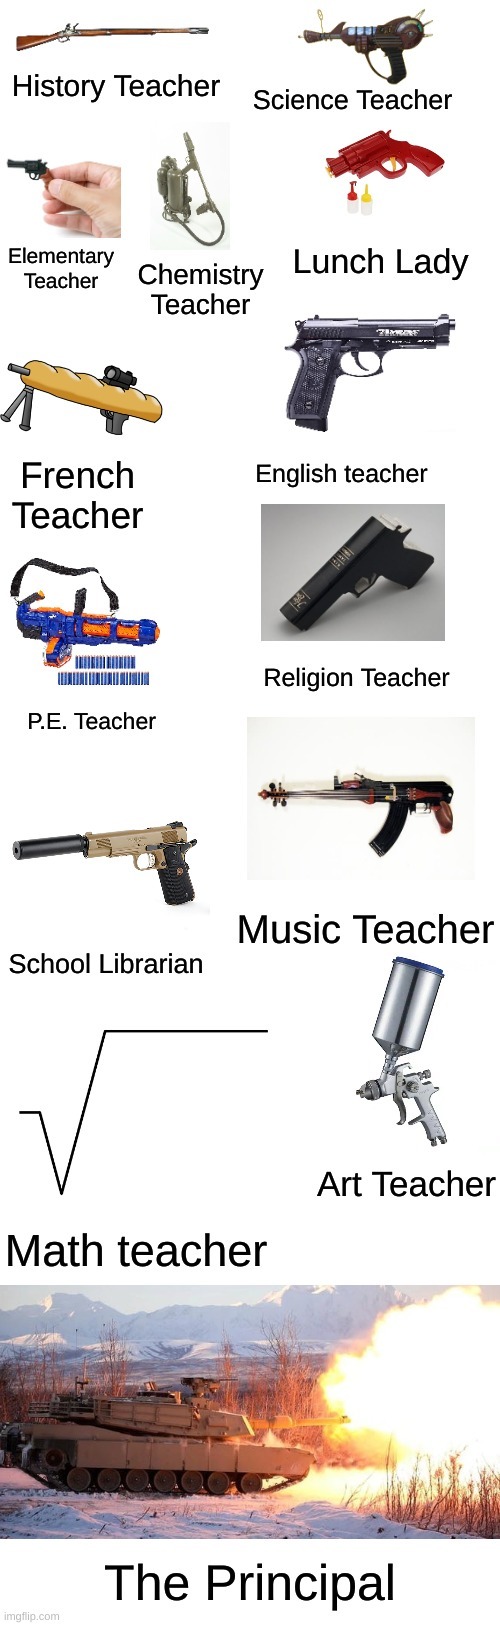 Every teacher’s weapon in a nutshell - meme